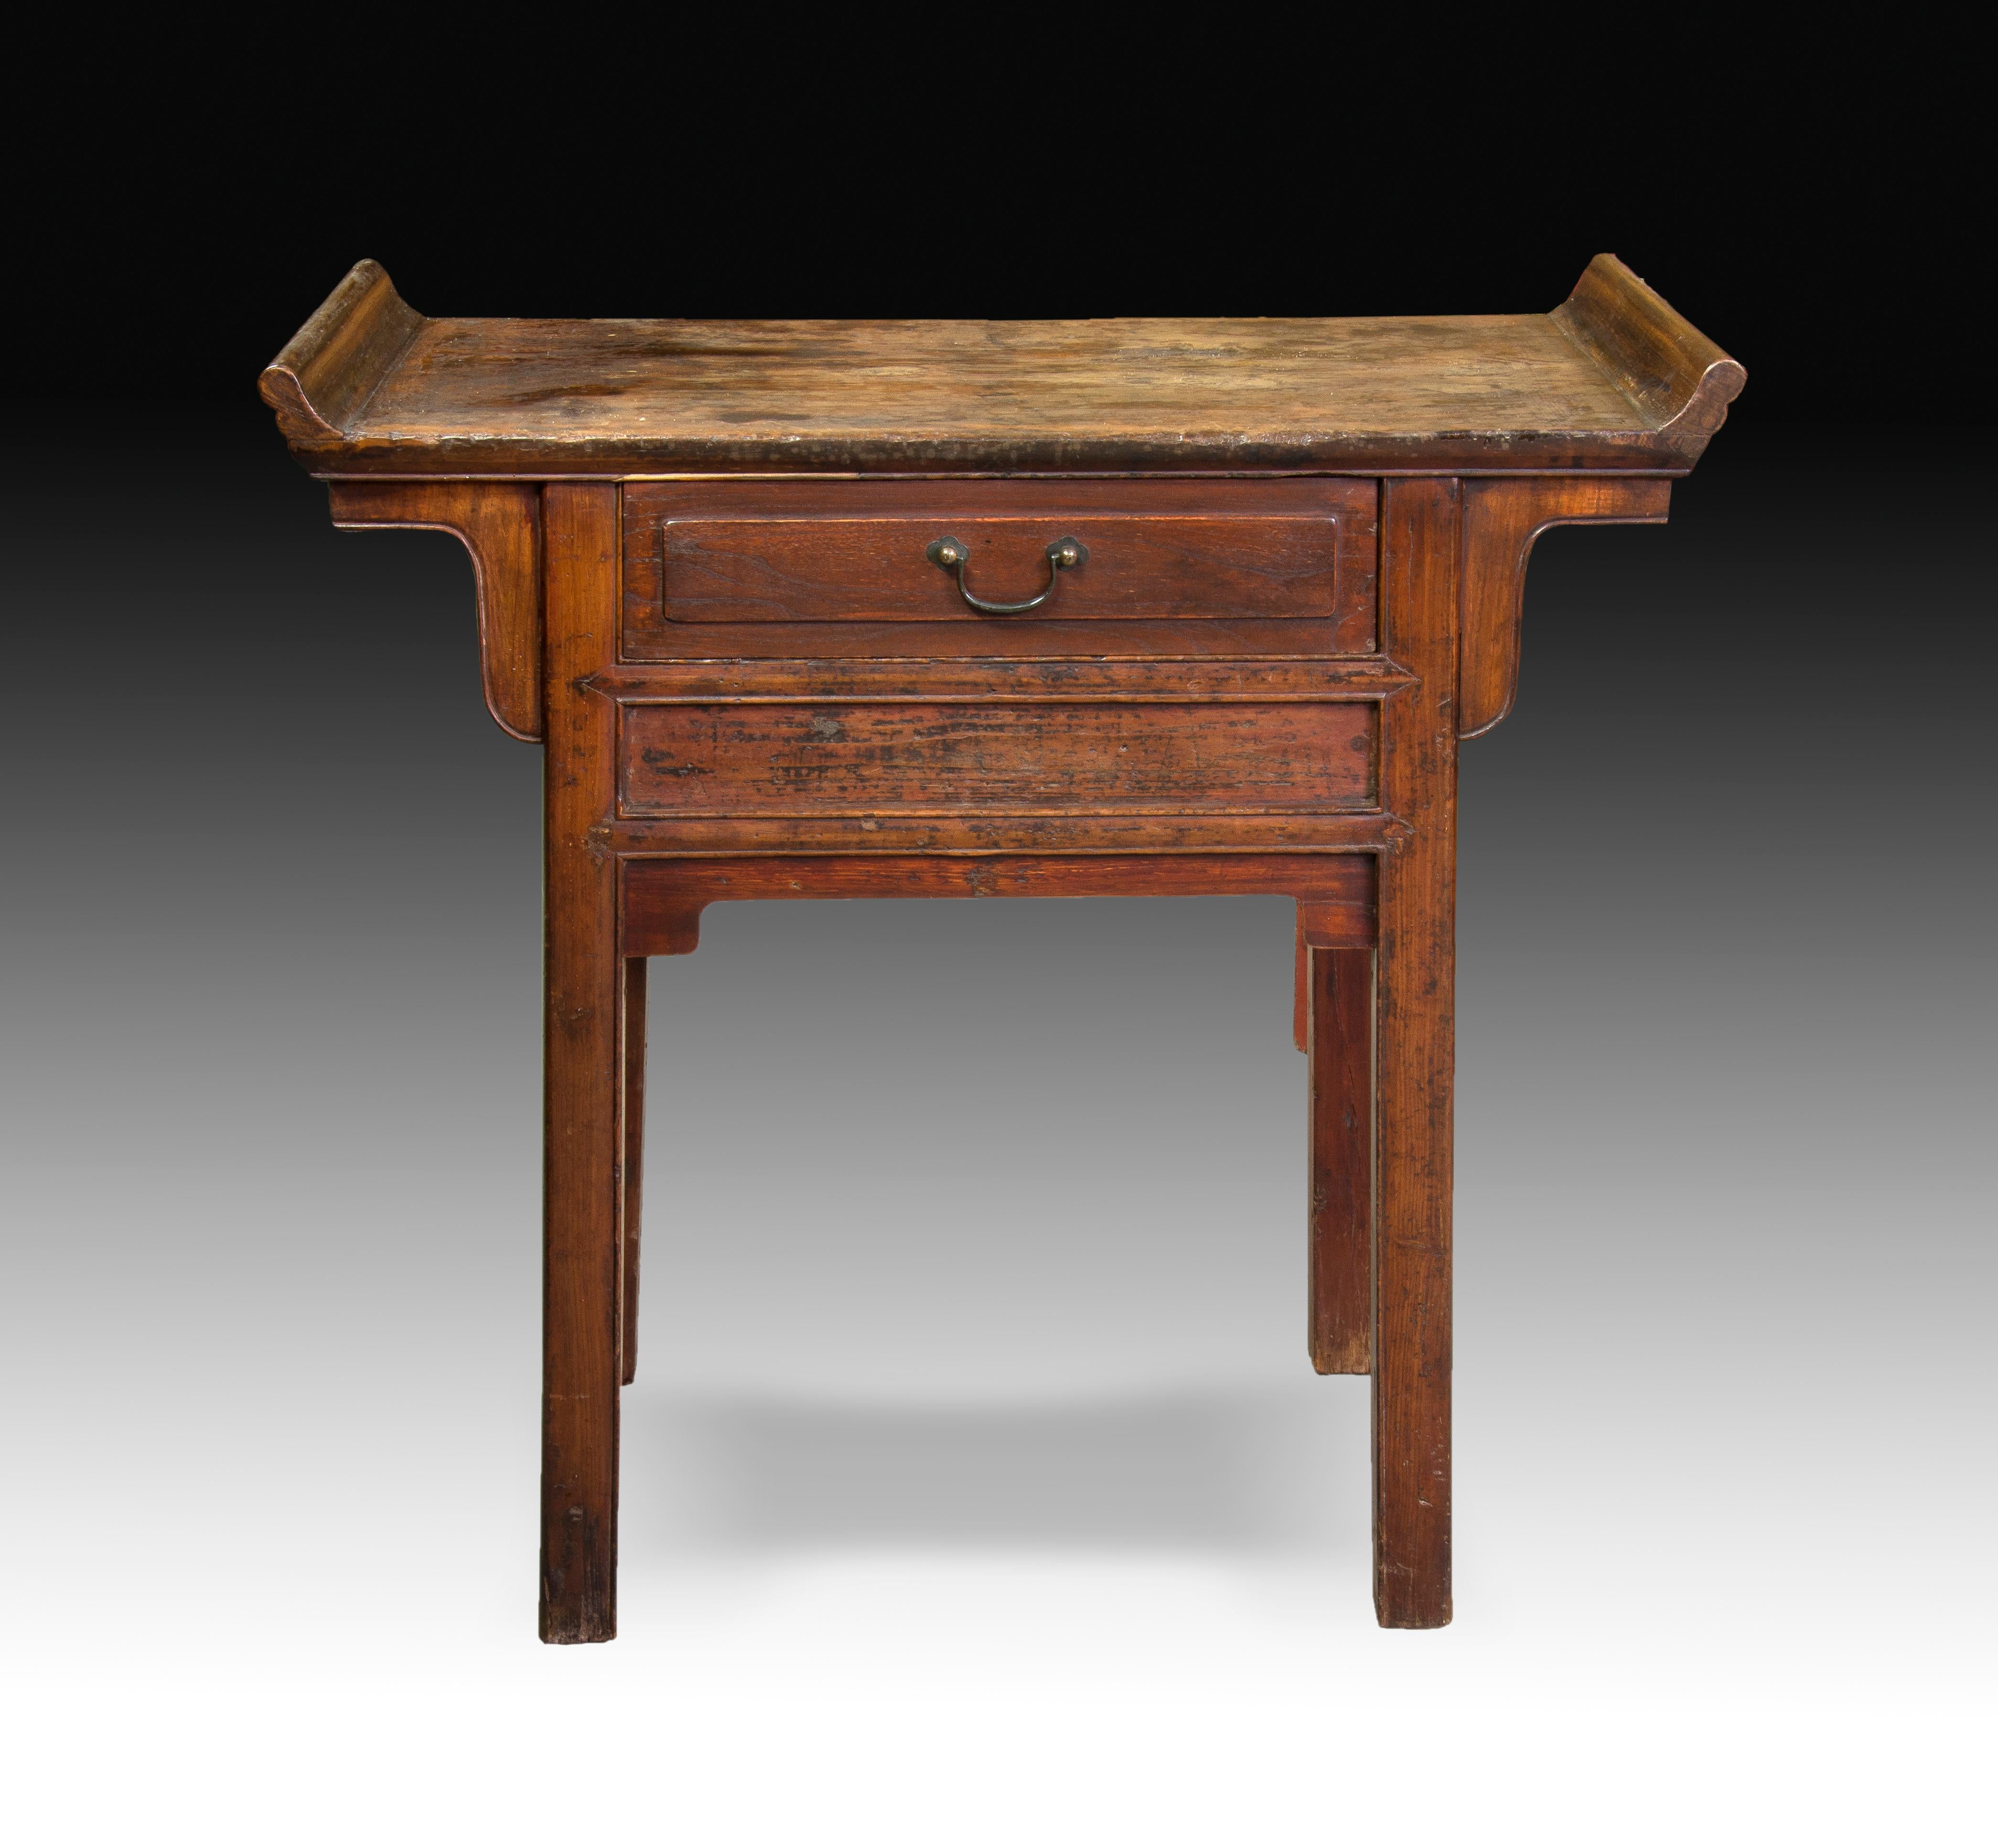 Orientalischer Tisch. Geschnitztes Holz, Metall. Zwanzigstes Jahrhundert. 
Beistelltisch aus geschnitztem Holz, mit einer rechteckigen Platte, die an den Schmalseiten mit zwei Highlights verziert ist, und einer Schublade an der Vorderseite. Sowohl